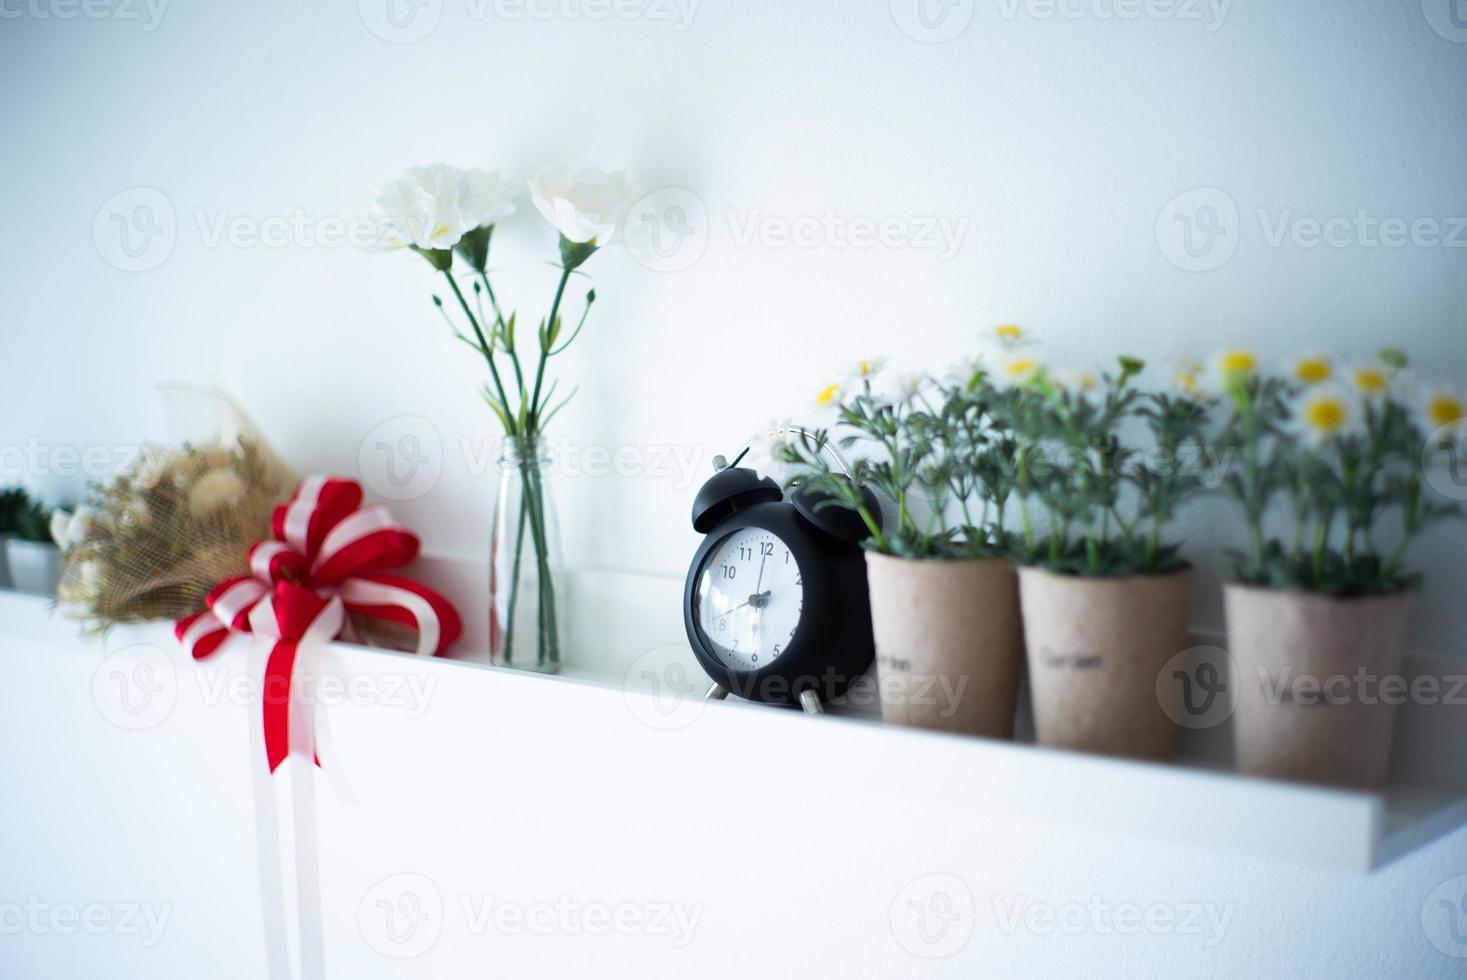 Vintage reloj despertador pone en el estante de madera blanca decorada por las flores en flor en la cerámica con fondo borroso de jarrón foto